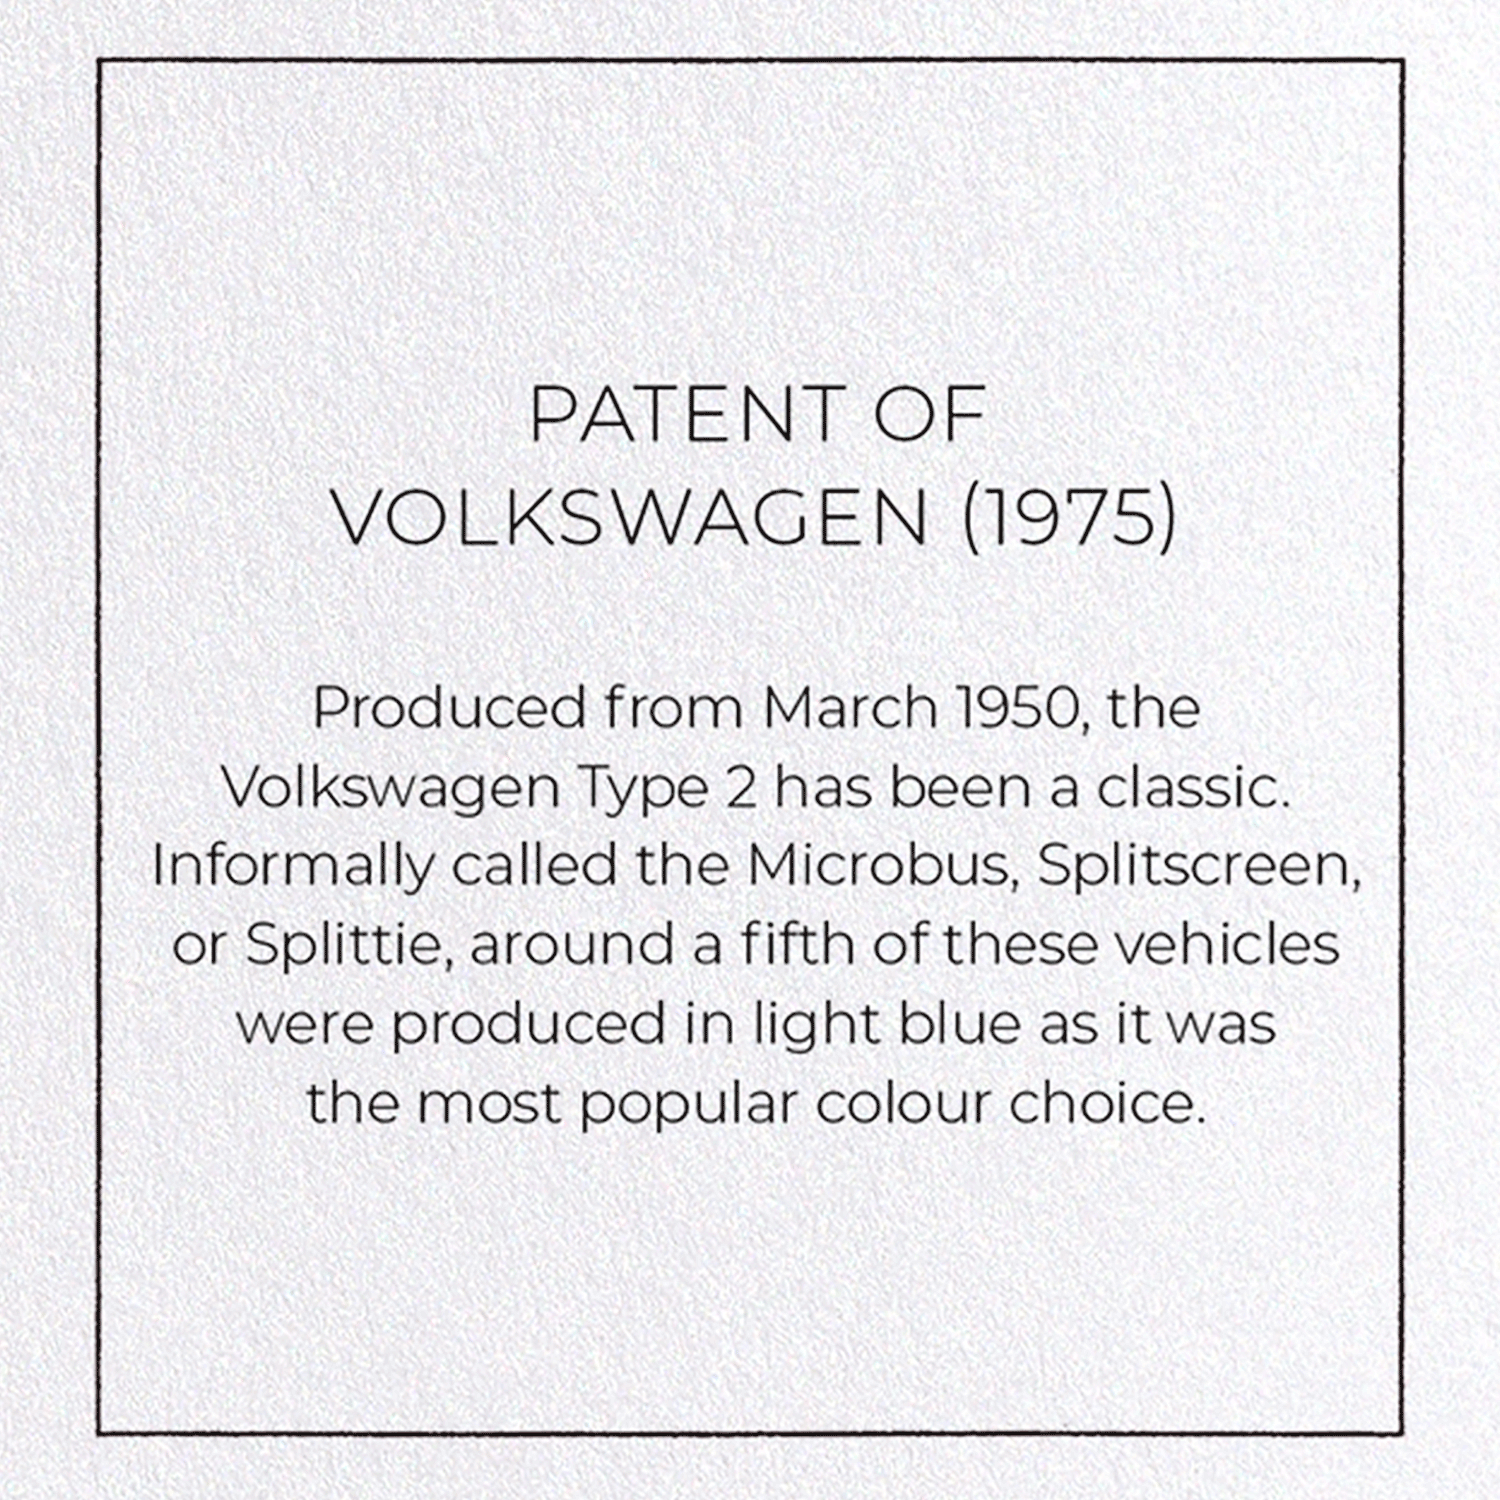 PATENT OF VOLKSWAGEN (1975)